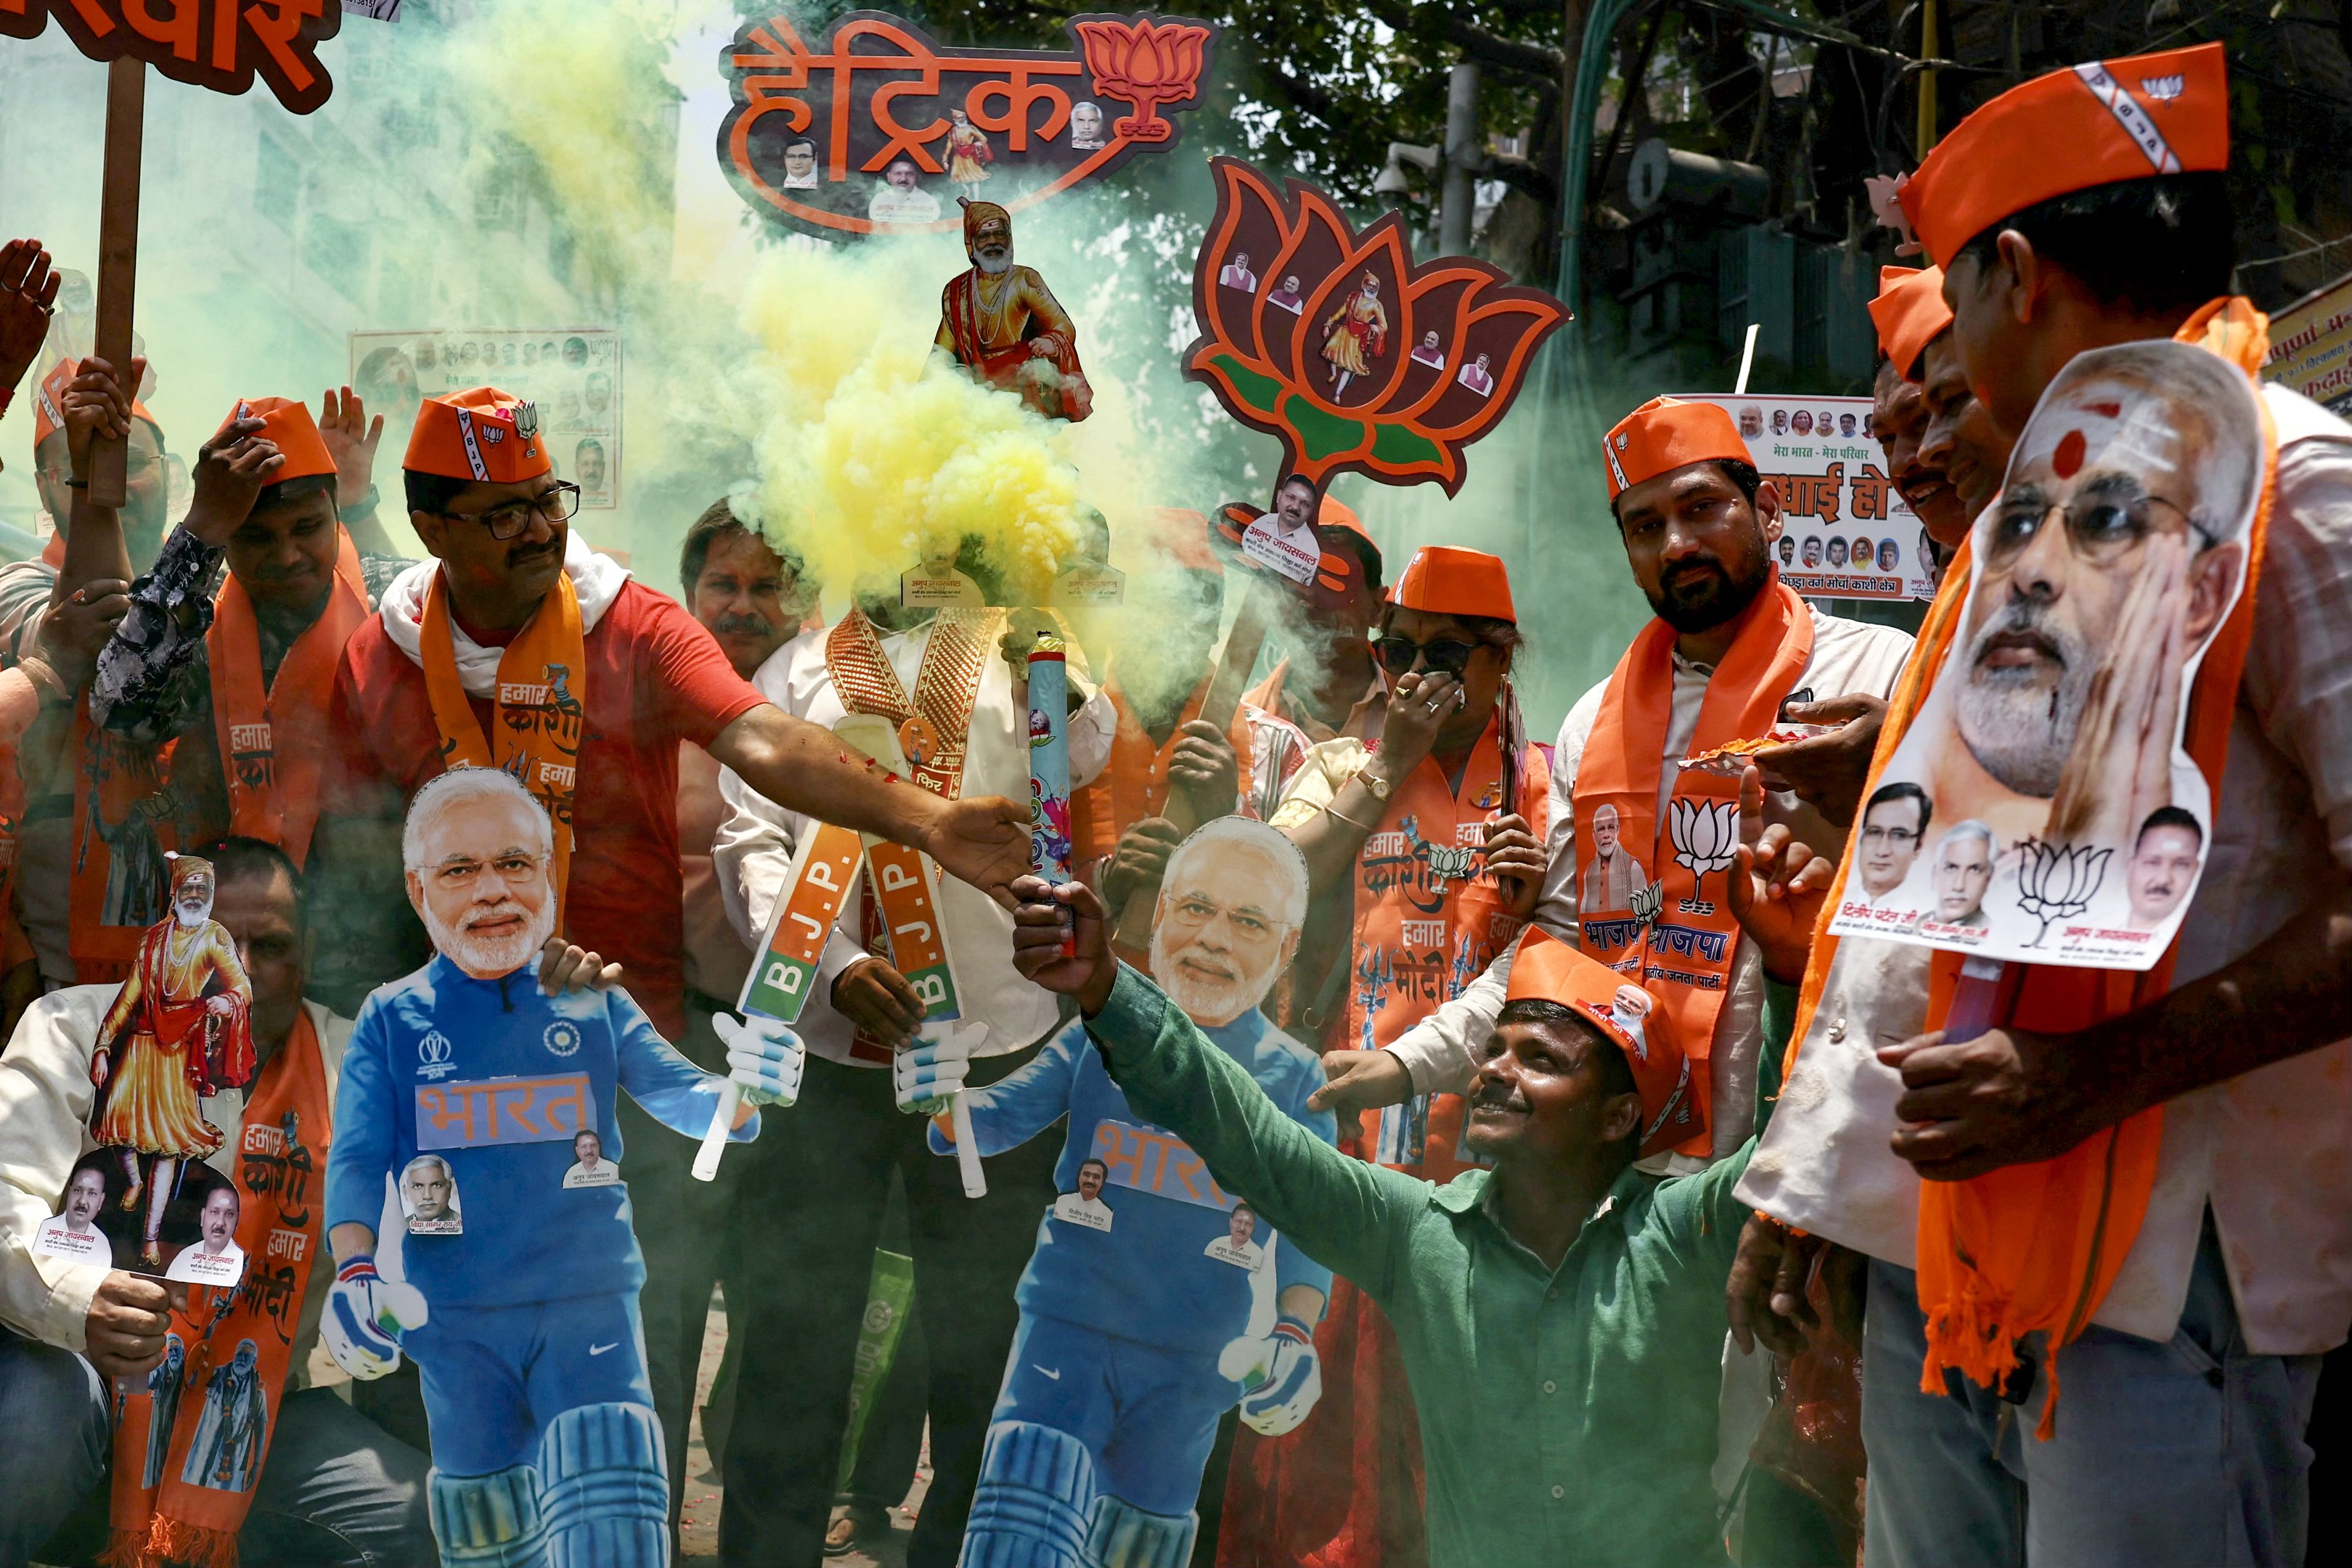 Apoiadores de Narendra Modi, Primeiro-Ministro da Índia e líder do Partido Bharatiya Janata (BJP), carregam recortes de sua imagem enquanto comemoram os resultados da contagem de votos das eleições gerais da Índia em Varanasi, em 4 de junho de 2024. A contagem de votos estava em andamento na eleição da Índia no dia 4 de junho, com o Primeiro-Ministro Narendra Modi praticamente garantido um triunfo para sua agenda nacionalista hindu, que lançou a oposição em desordem e aumentou as preocupações com os direitos das minorias. (Foto por Niharika KULKARNI / AFP)